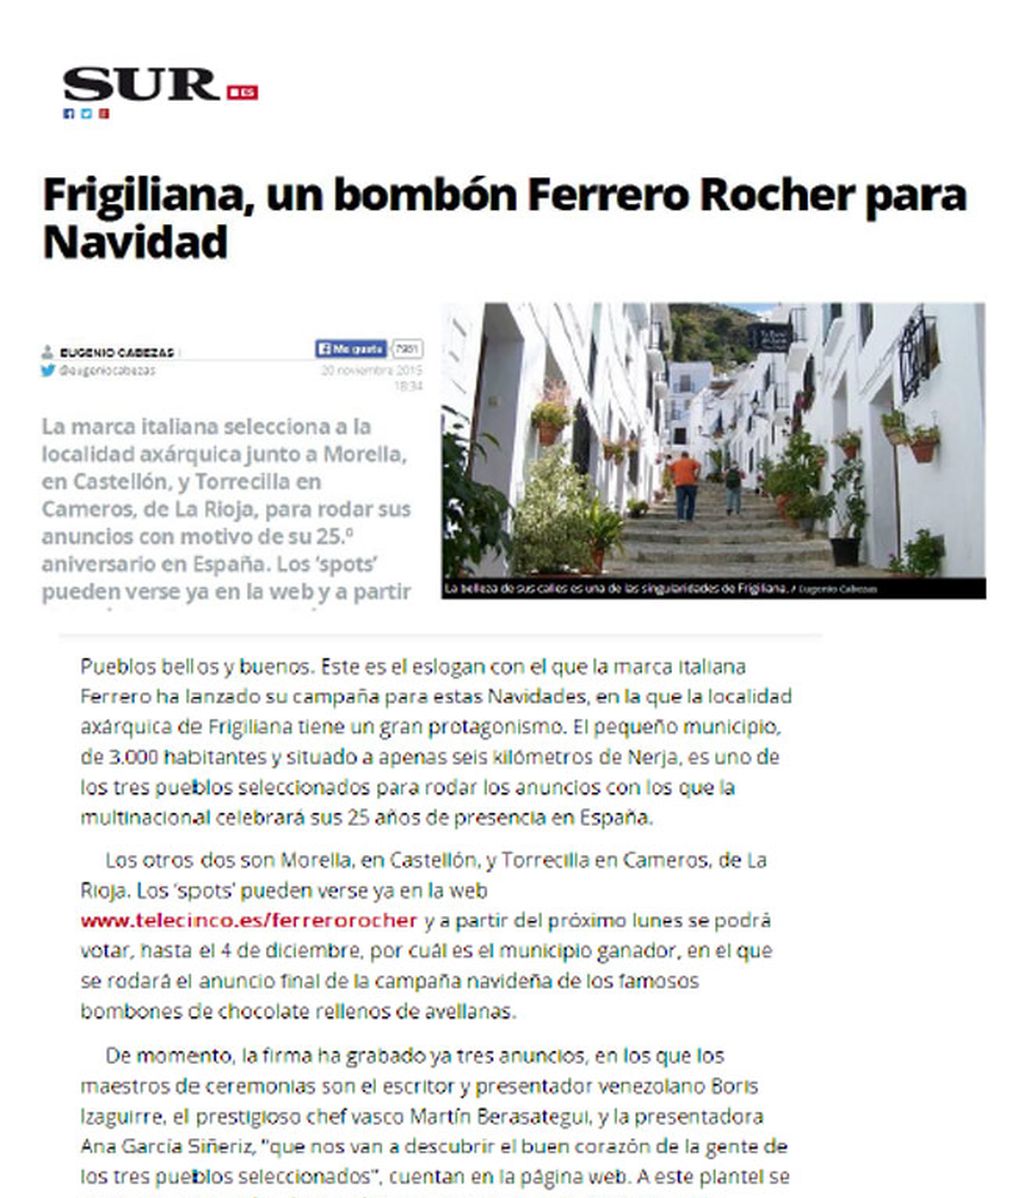 Medios locales y nacionales se hacen eco del 25 aniversario de Ferrero Rocher